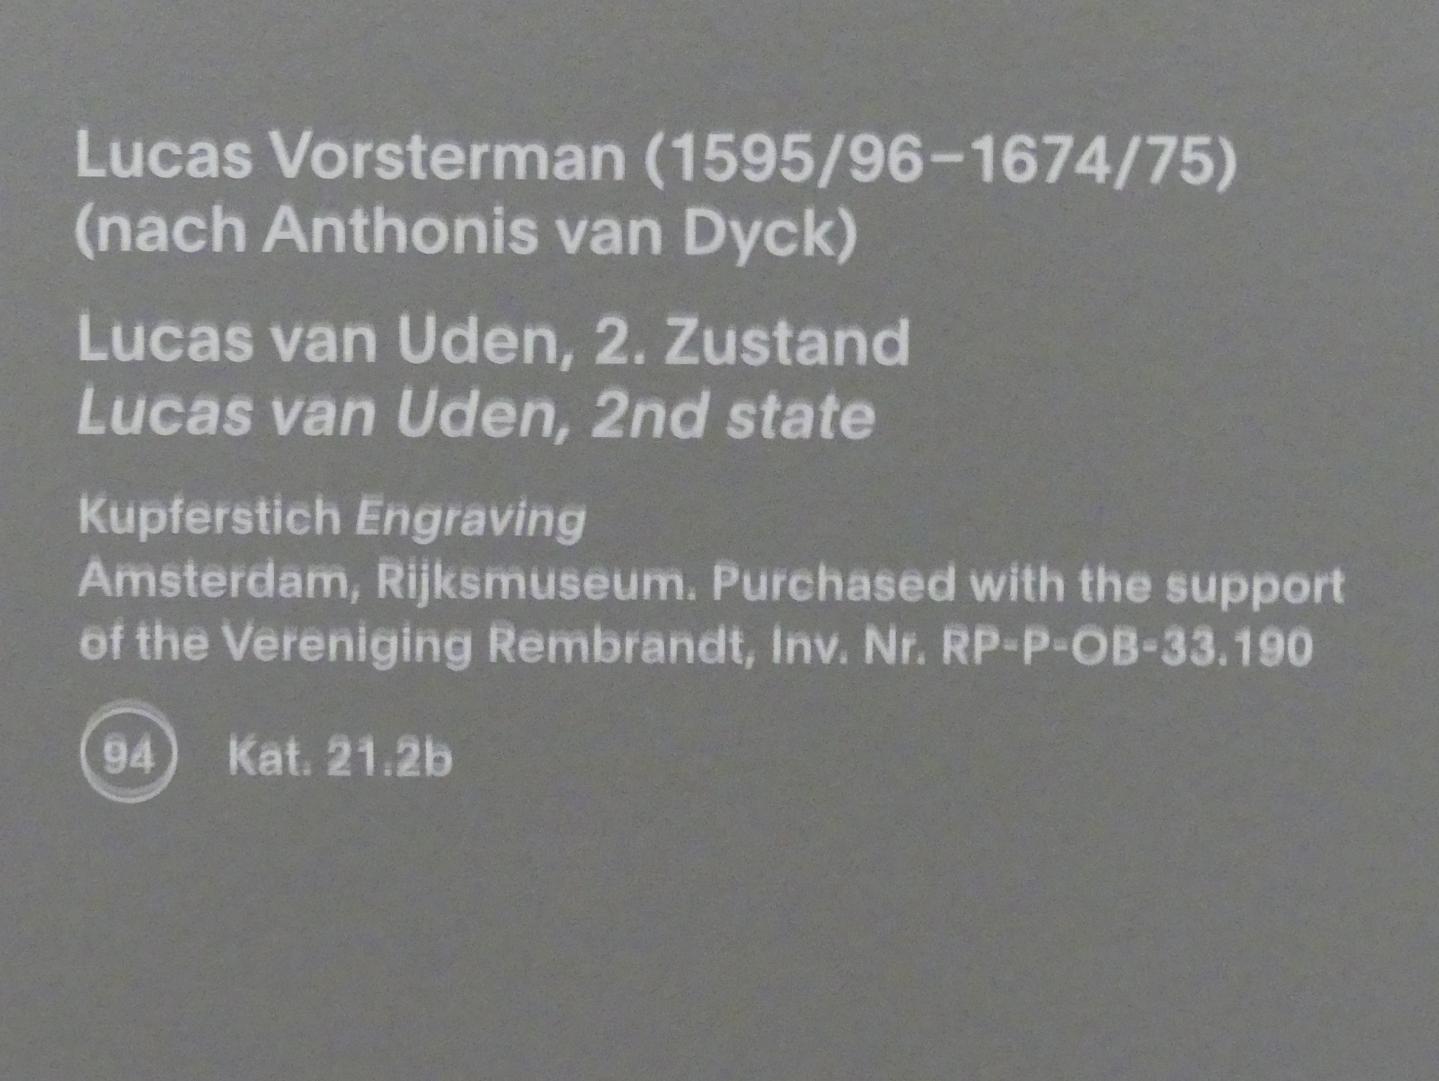 Lucas Vorsterman (1621–1634), Lucas van Uden, 2.Zustand, München, Alte Pinakothek, Ausstellung "Van Dyck" vom 25.10.2019-02.02.2020, Die "Ikonographie" - 2, Undatiert, Bild 3/3